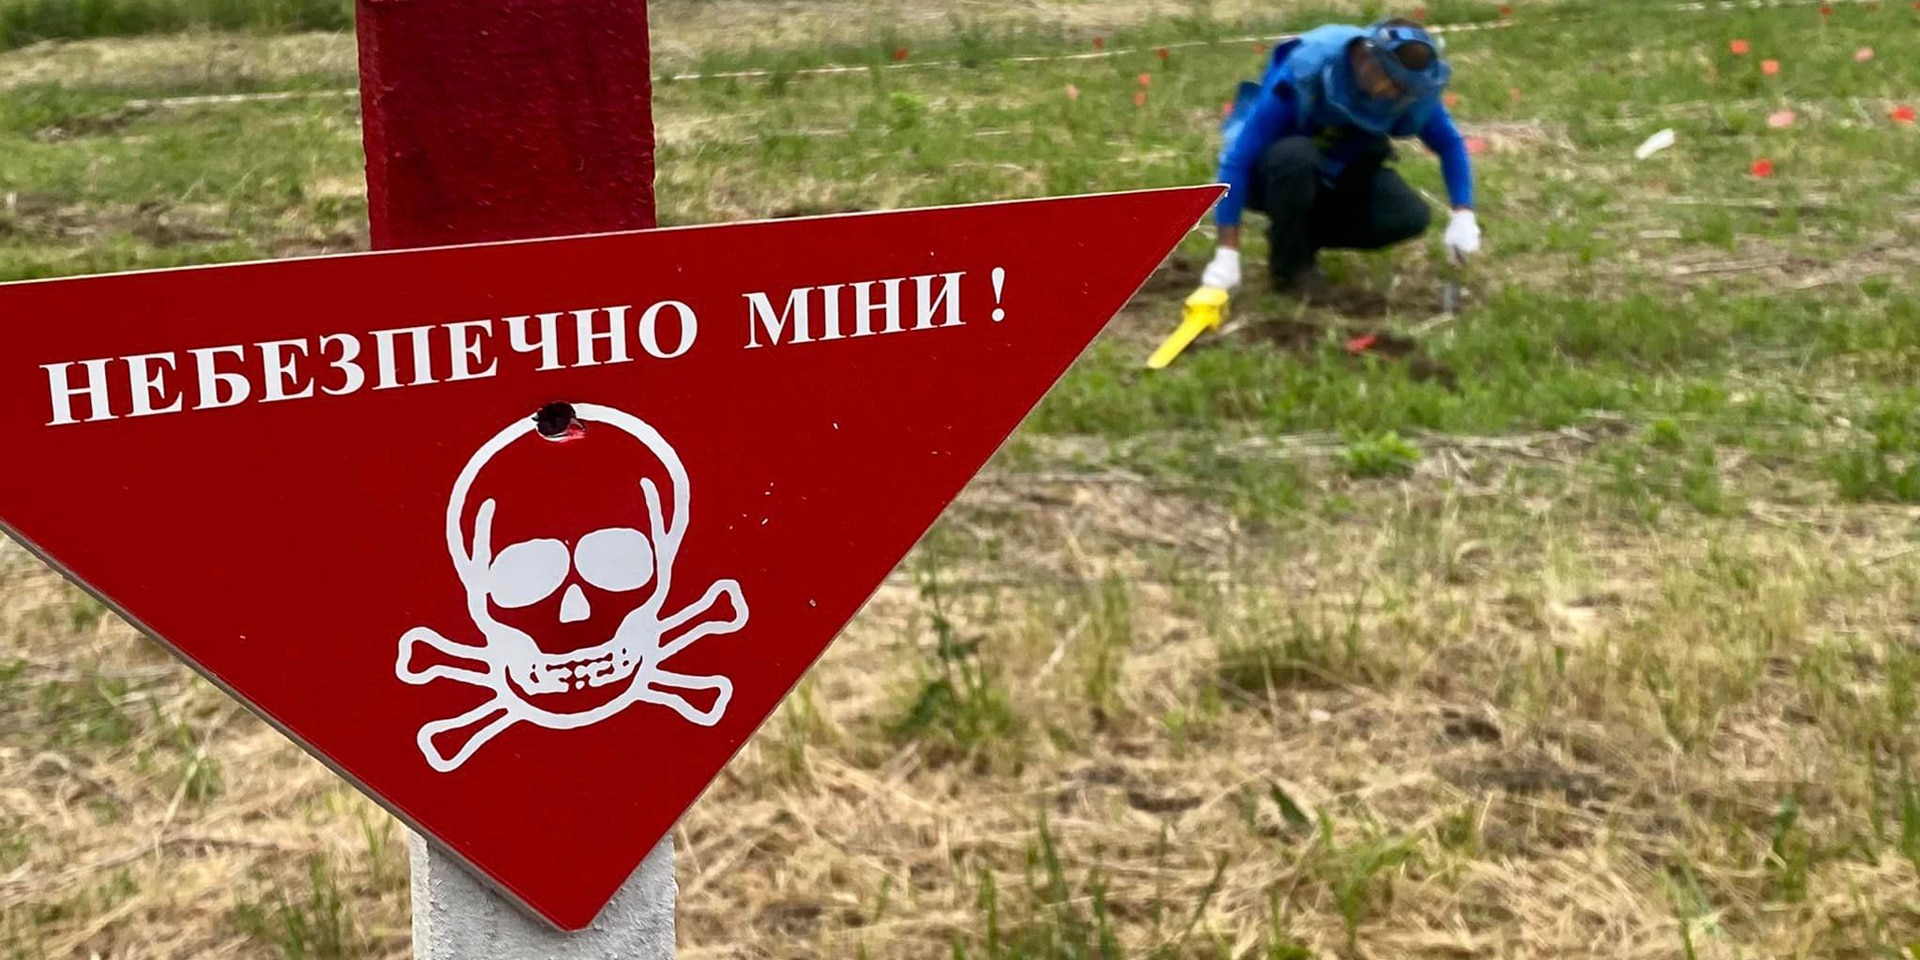 Un homme en tenue de protection travaille dans un champ où est planté un panneau qui indique un danger de mort.